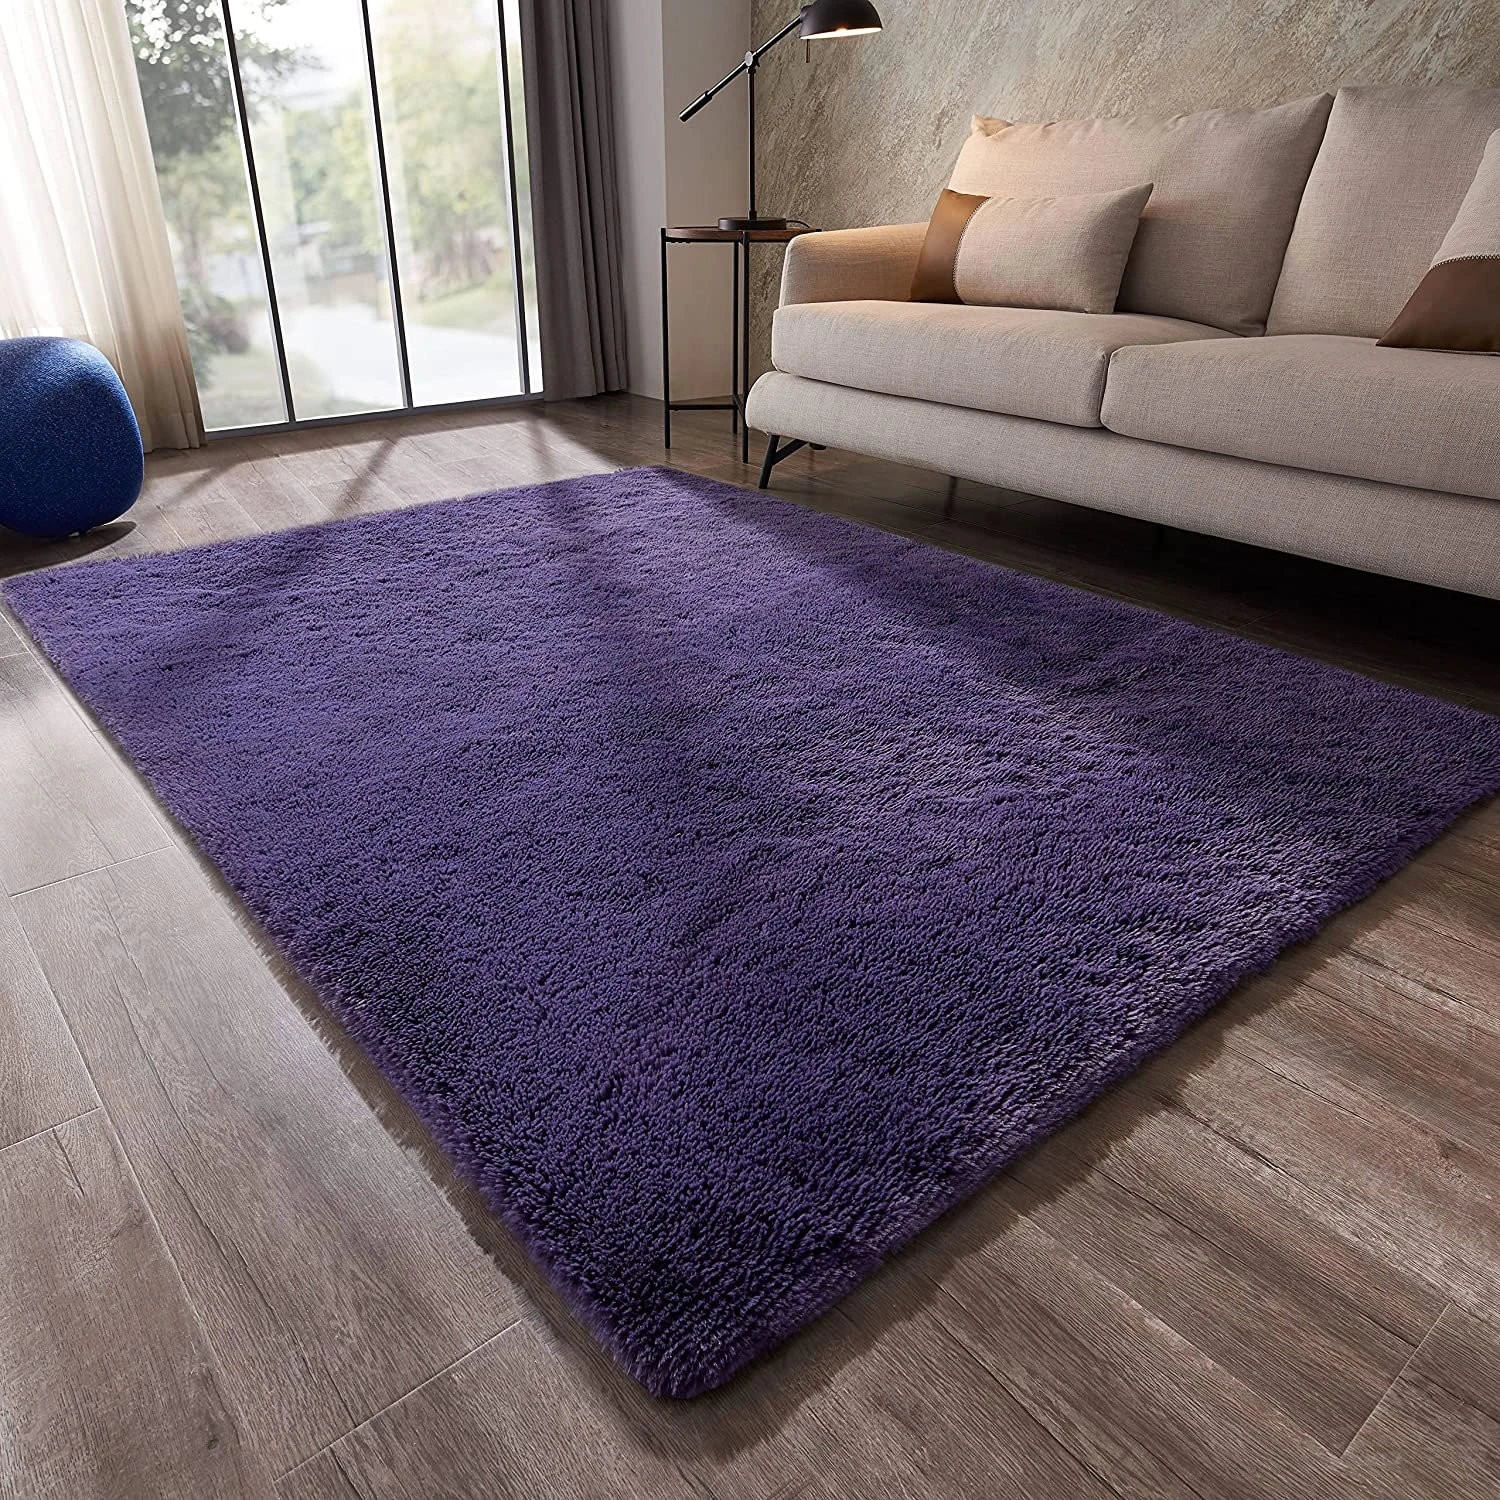 רך פלאפי אזור שטיח שאגי סלון שטיח פאזי גריי סגול שטיחים נגד החלקה פרוותי  קומפי שינה שטיחים בית תפאורה רצפת שטיח| | - AliExpress